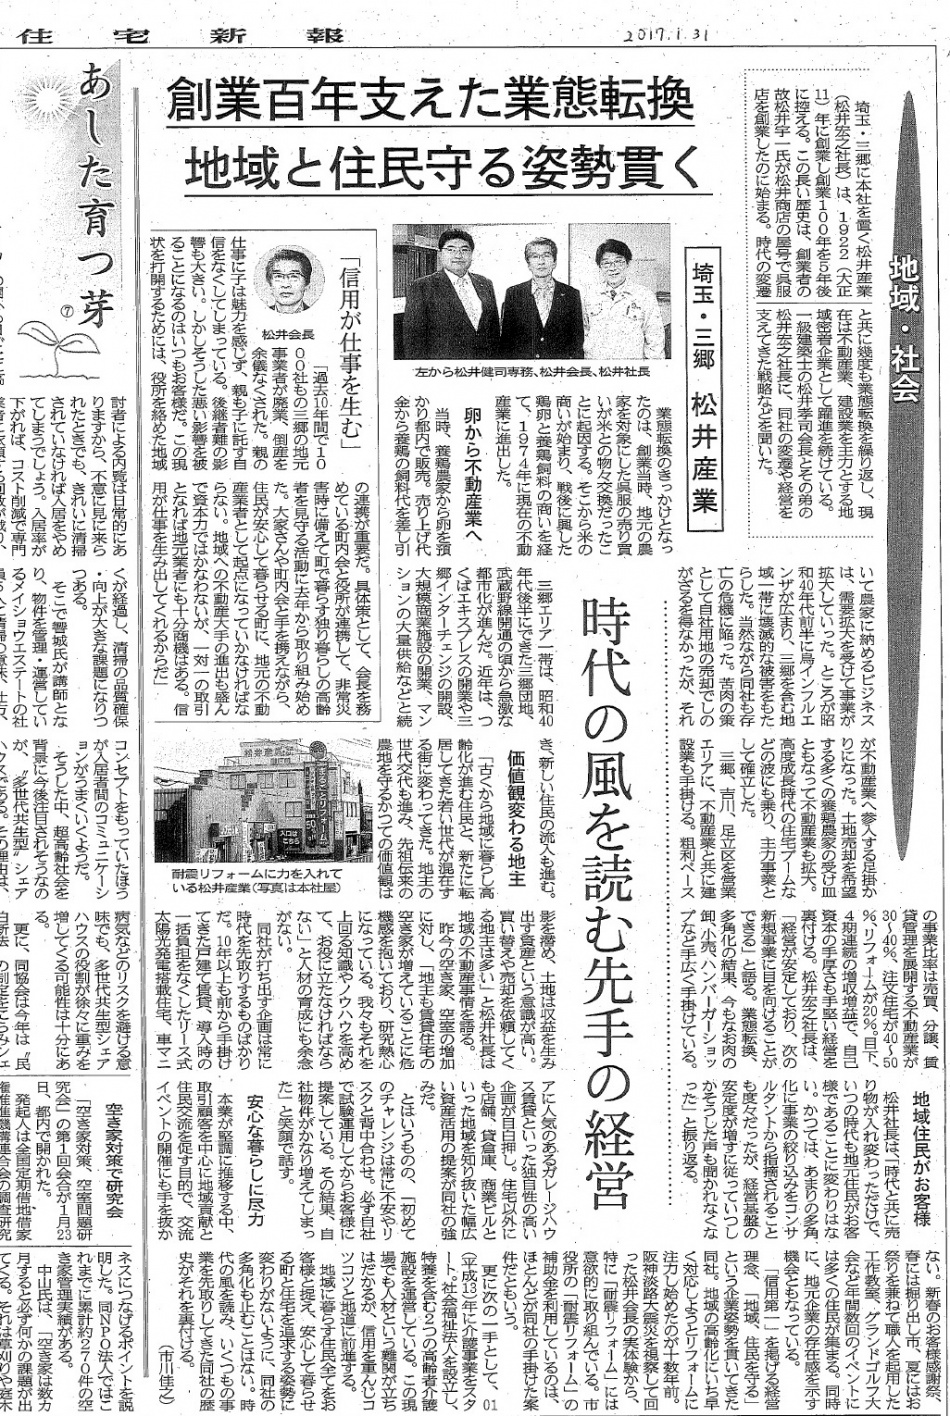 不動産なら埼玉県三郷市の松井産業株式会社。創業100周年まであと５年です。創業者から受け継がれた地域のお役立ち業をこれからも続けてまいります。